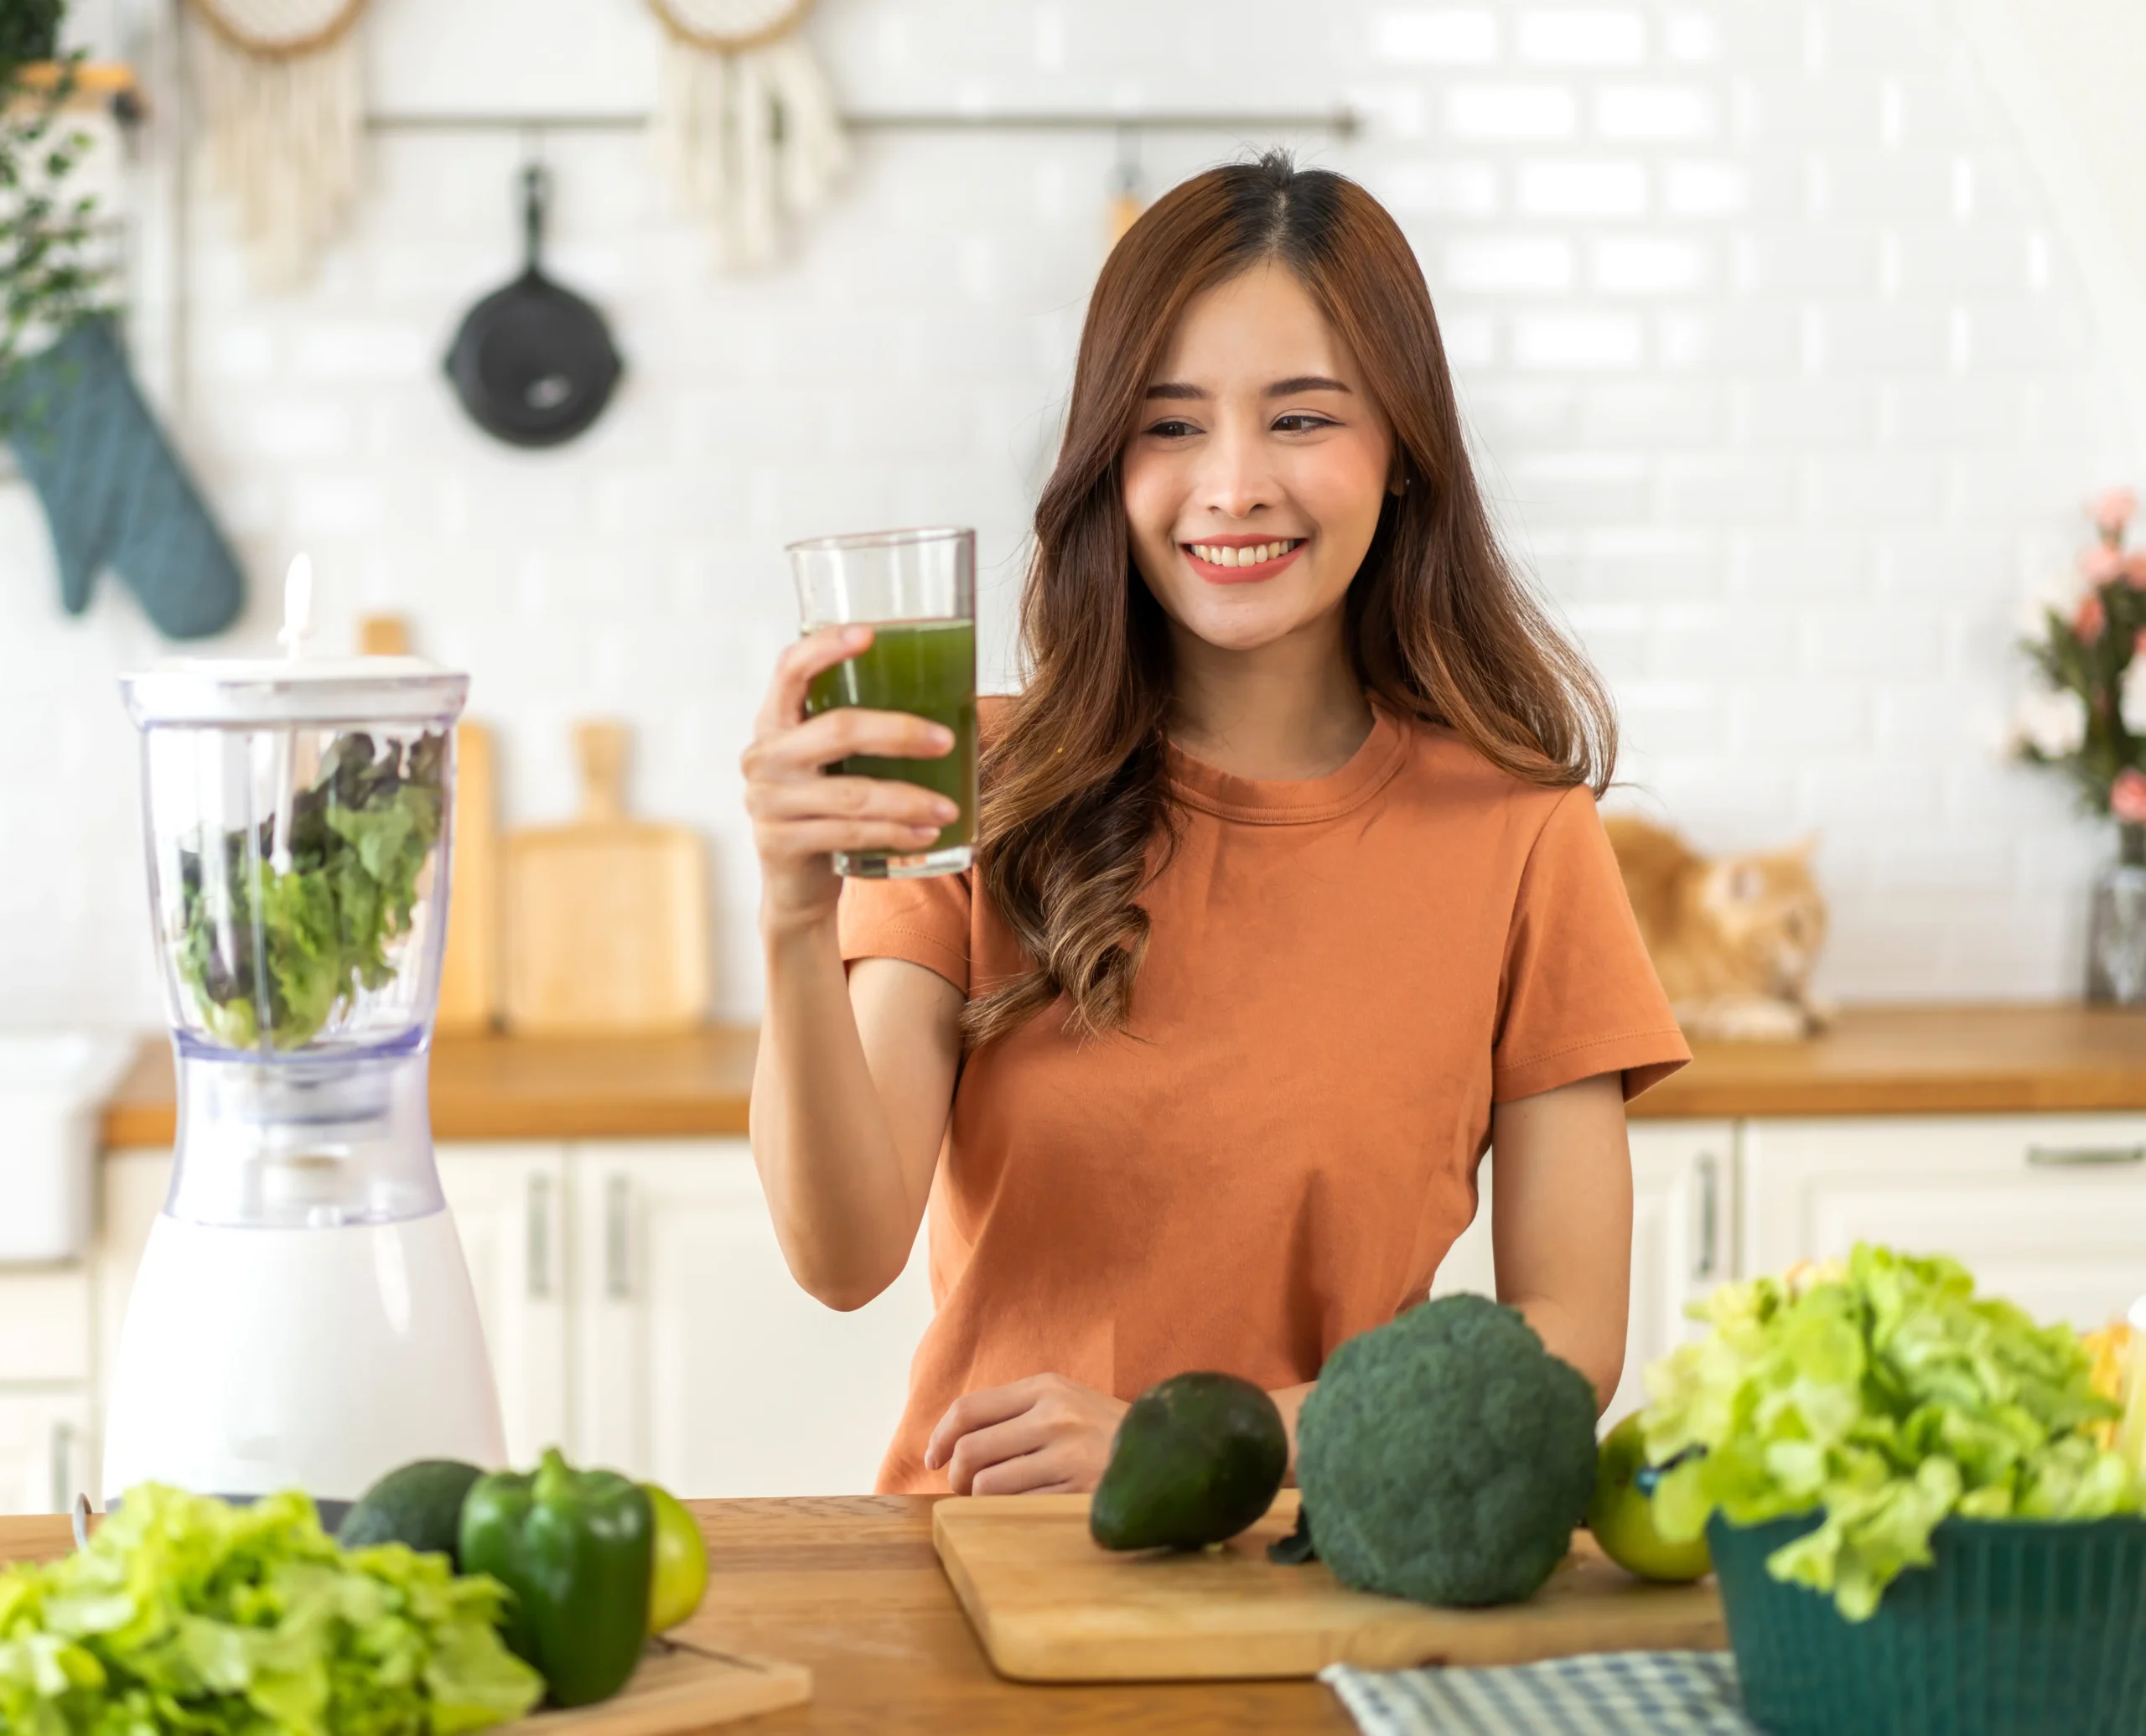 mujer sonriendo mientras toma un vaso de jugo verde